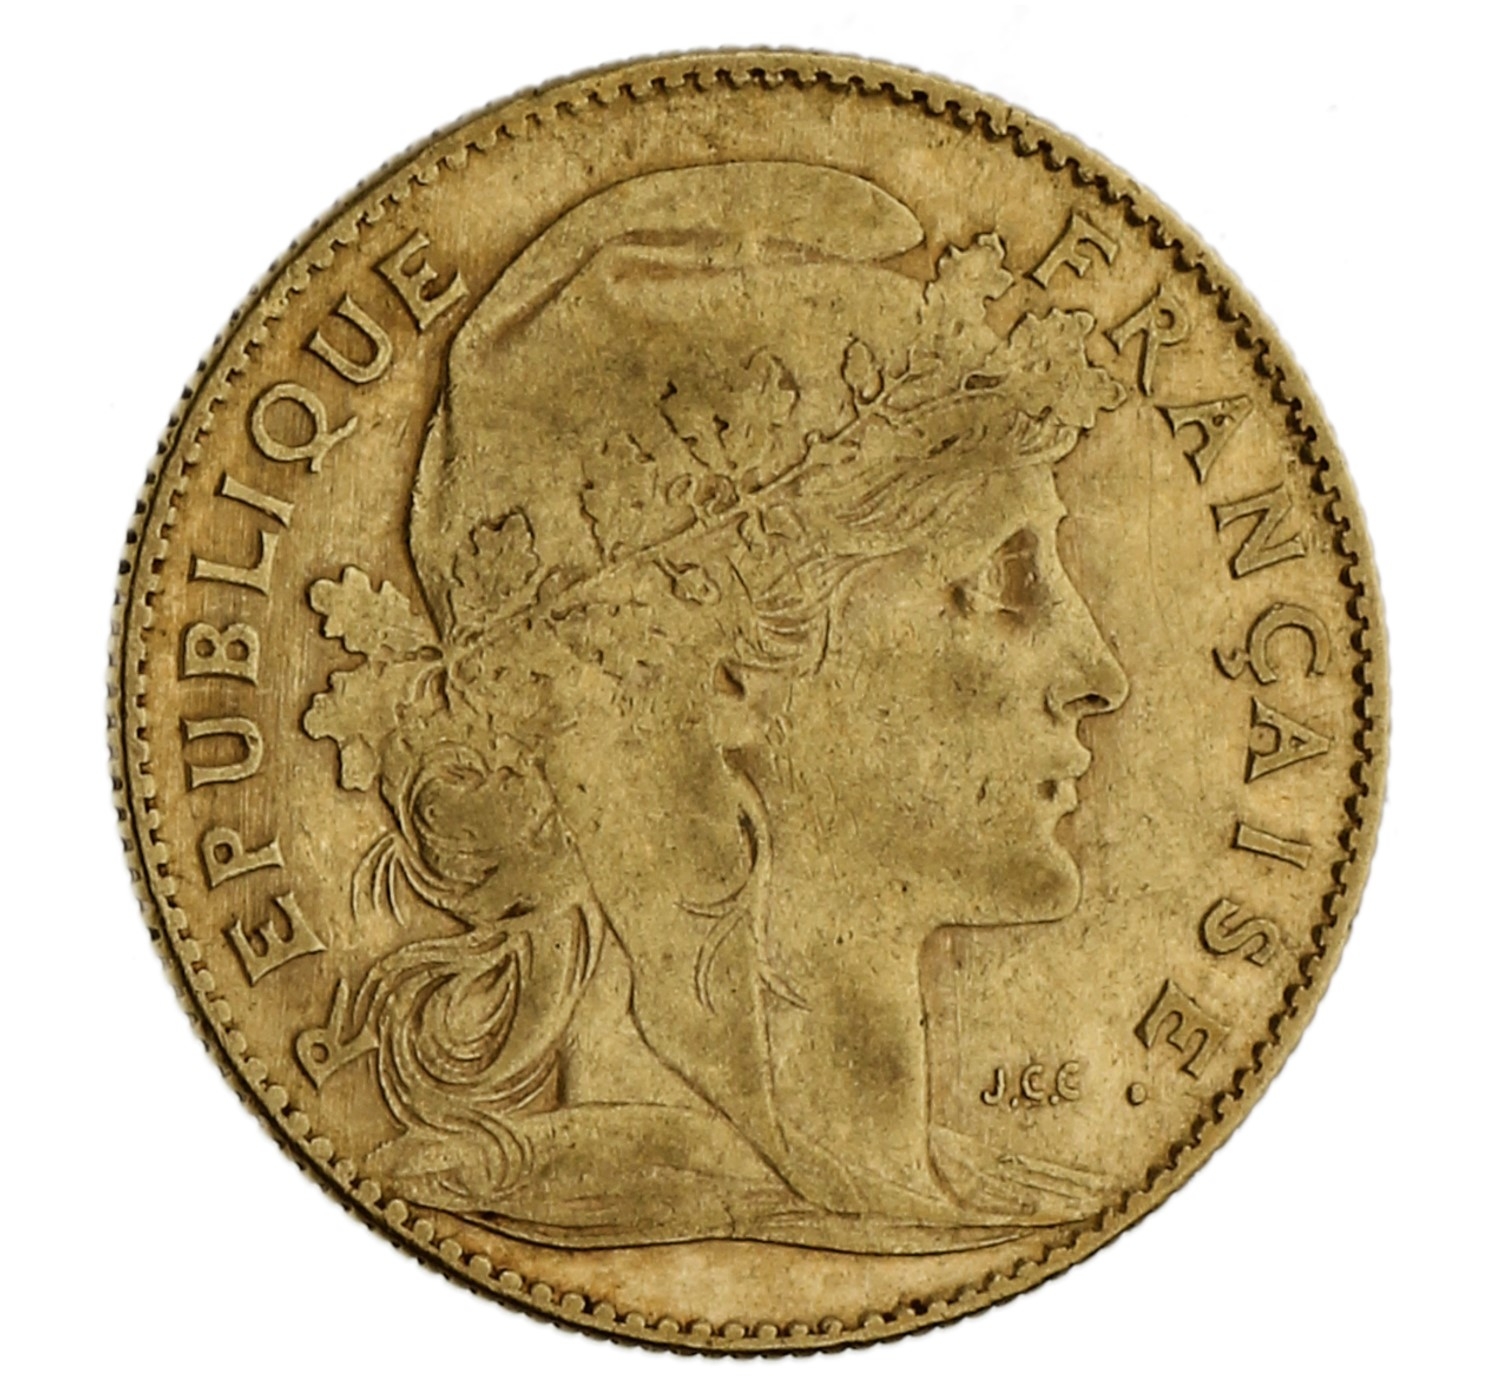 10 Francs - France - 1906